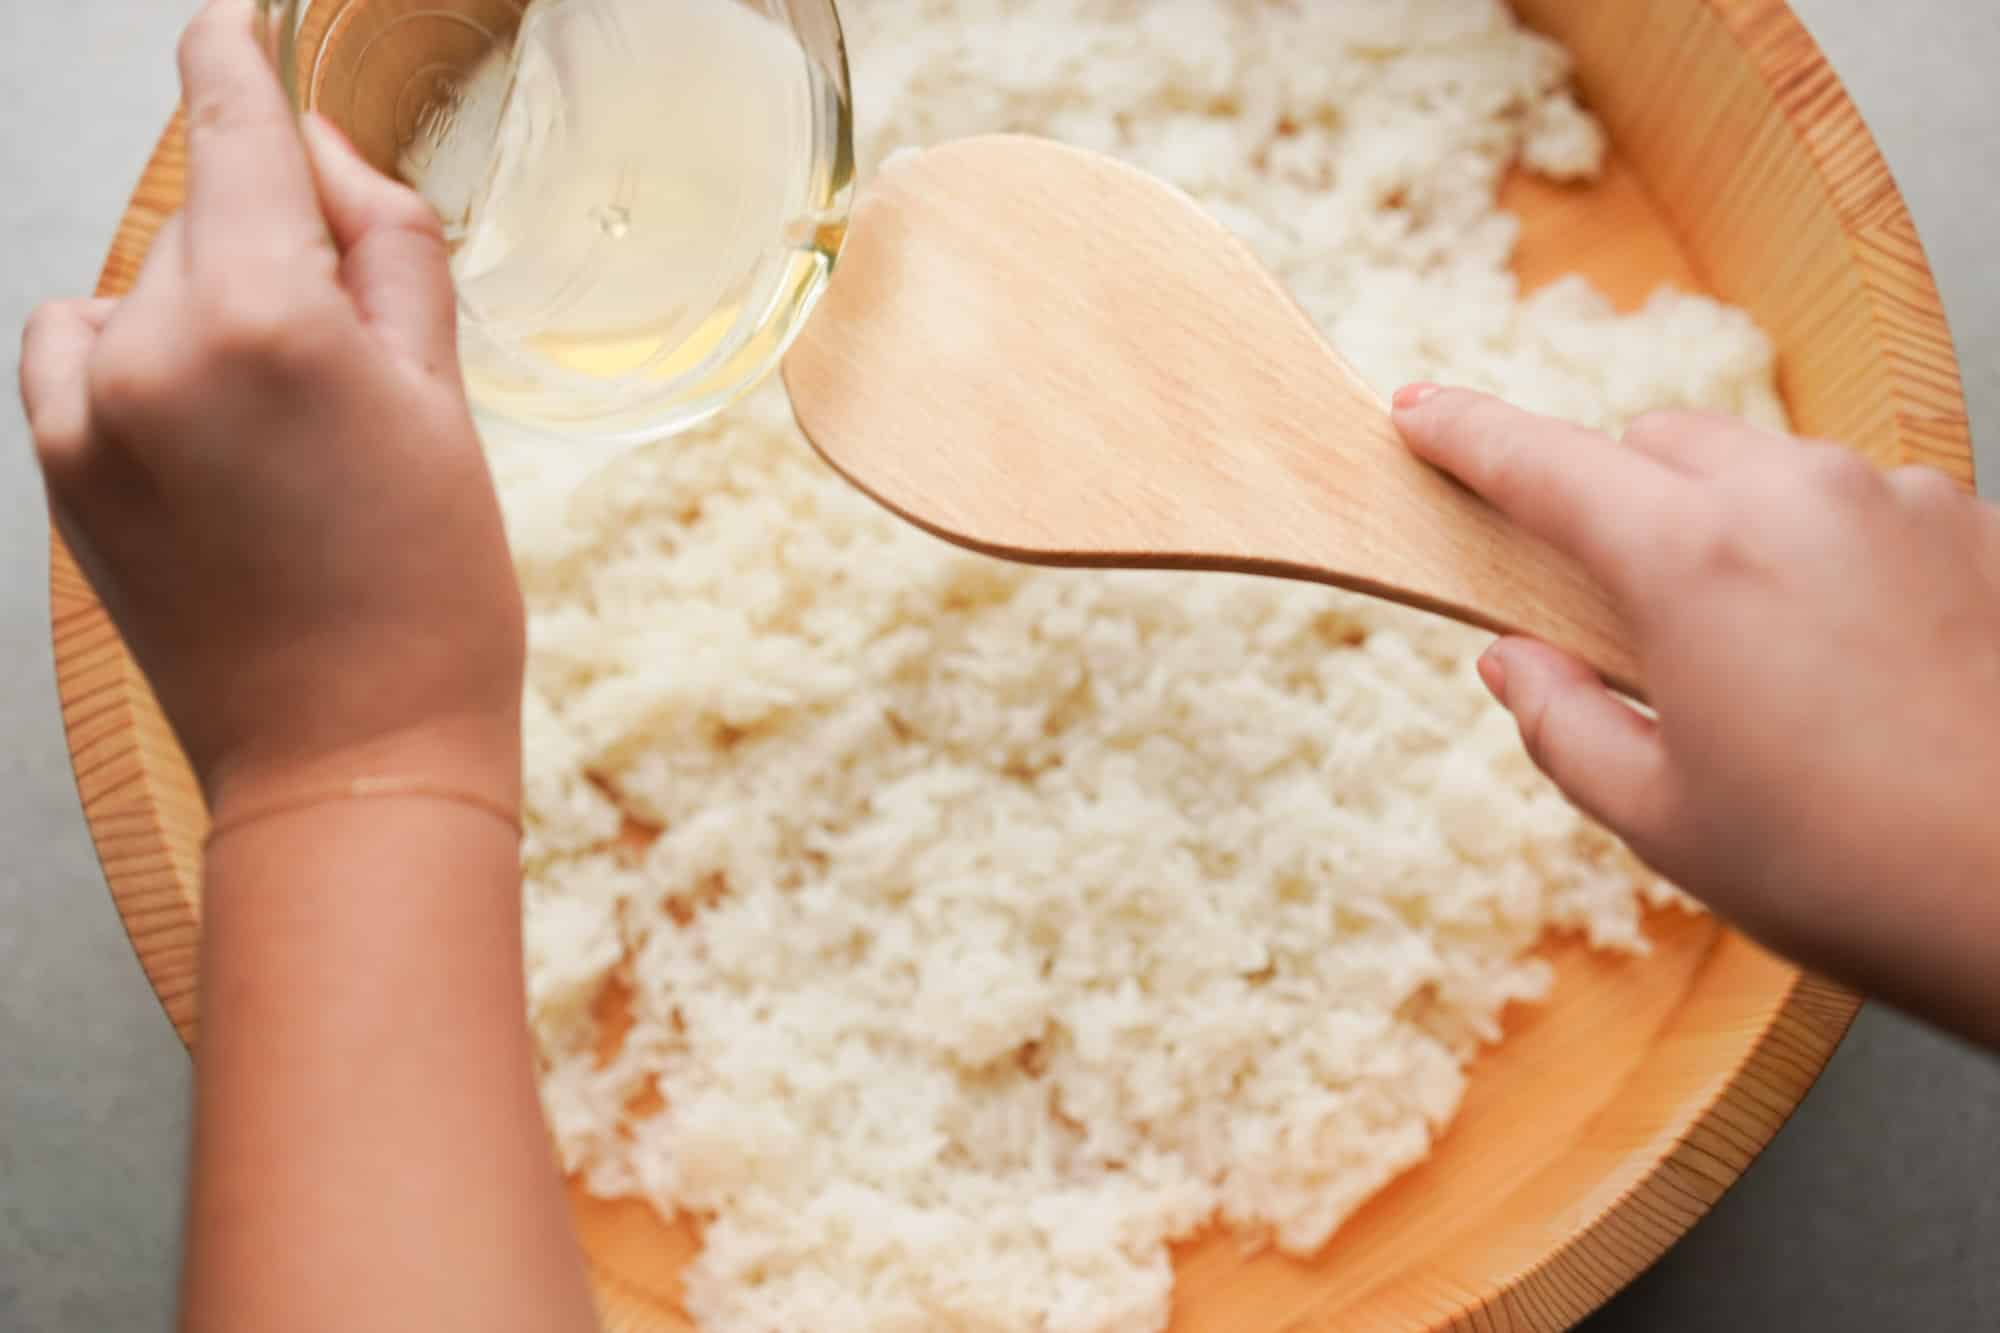 https://www.hungryhuy.com/wp-content/uploads/seasoning-sushi-rice.jpg